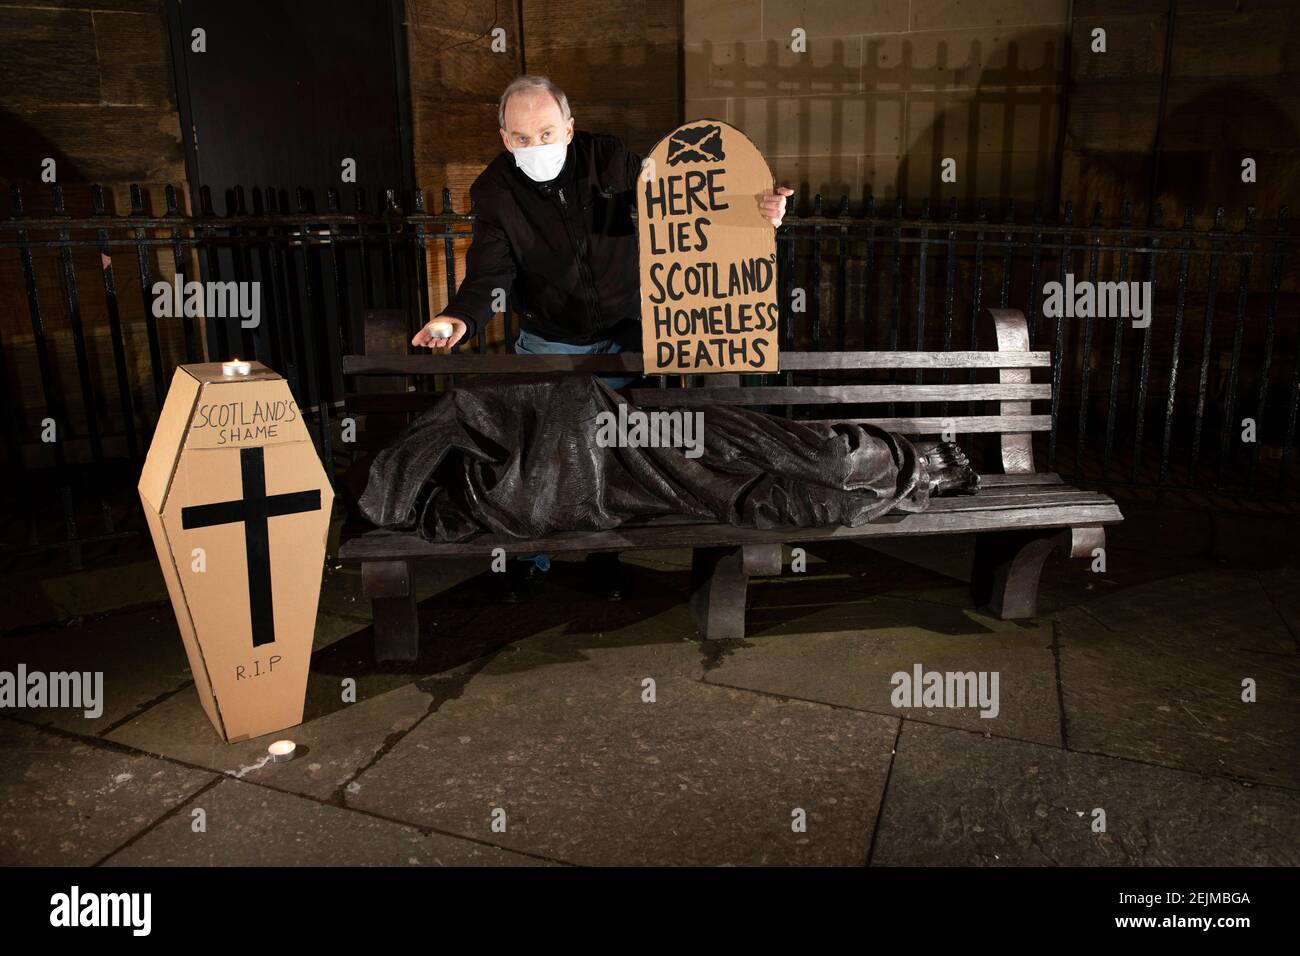 Glasgow, Scozia, Regno Unito. 22 Feb 2021. Nella foto: Sean Clerkin - Organizzazione degli inquilini scozzesi, con un cartello a forma di lapide che recita: "ECCO LE MORTI SENZA TETTO DI SCOTLANDS". Oggi 23 febbraio 21, il governo scozzese ha rilasciato i dati sui decessi per senzatetto 3 giorni prima, che sono aumentati del 11% rispetto allo scorso anno. Il link https://www.nrscotland.gov.uk/news/2021/homeless-deaths-2019 mostra l'articolo oggi. Credit: Colin Fisher/Alamy Live News Foto Stock